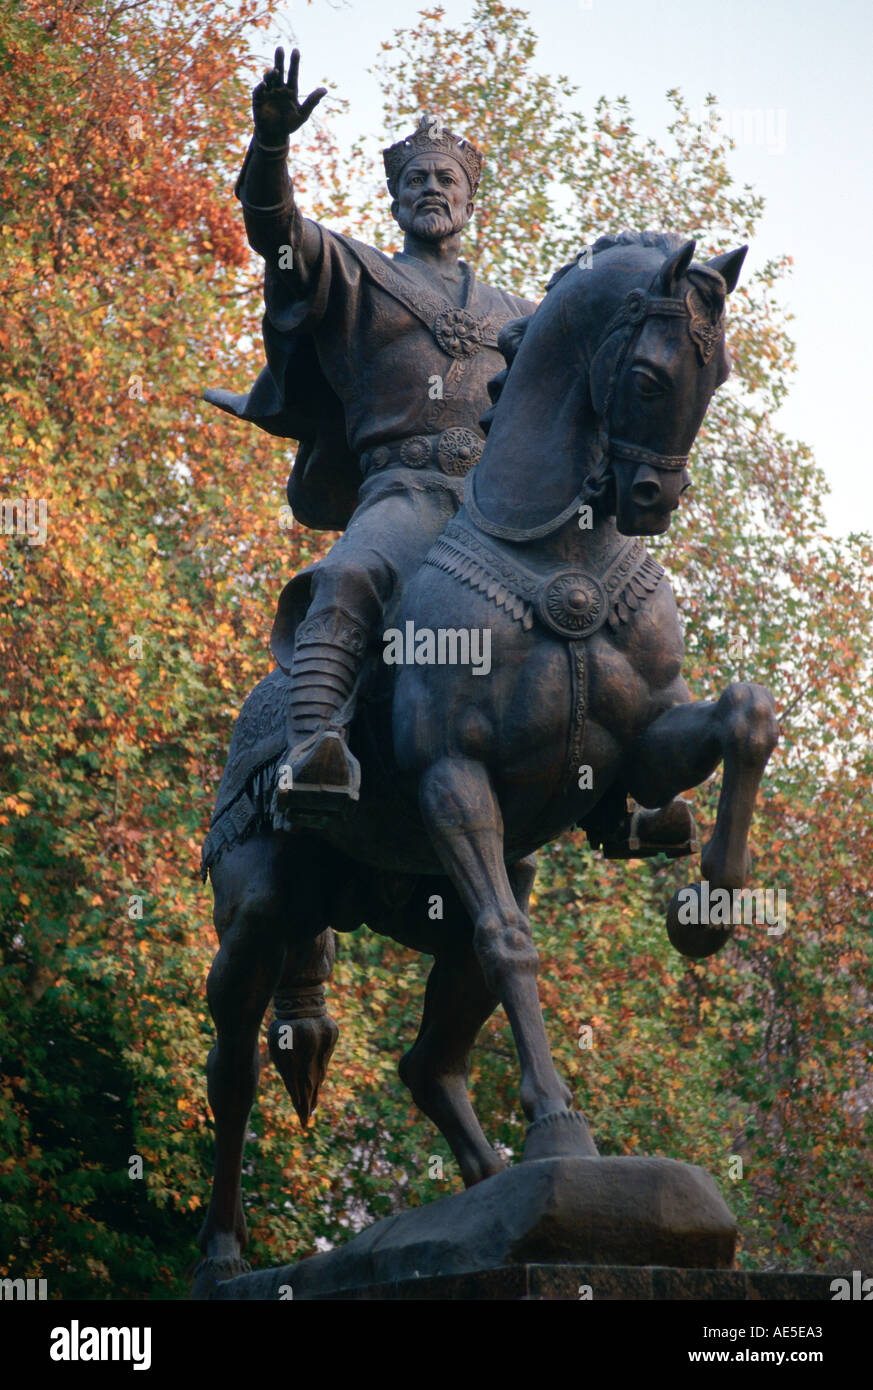 Statua di bronzo di Tamerlano sul suo cavallo a Tashkent in Uzbekistan Foto Stock